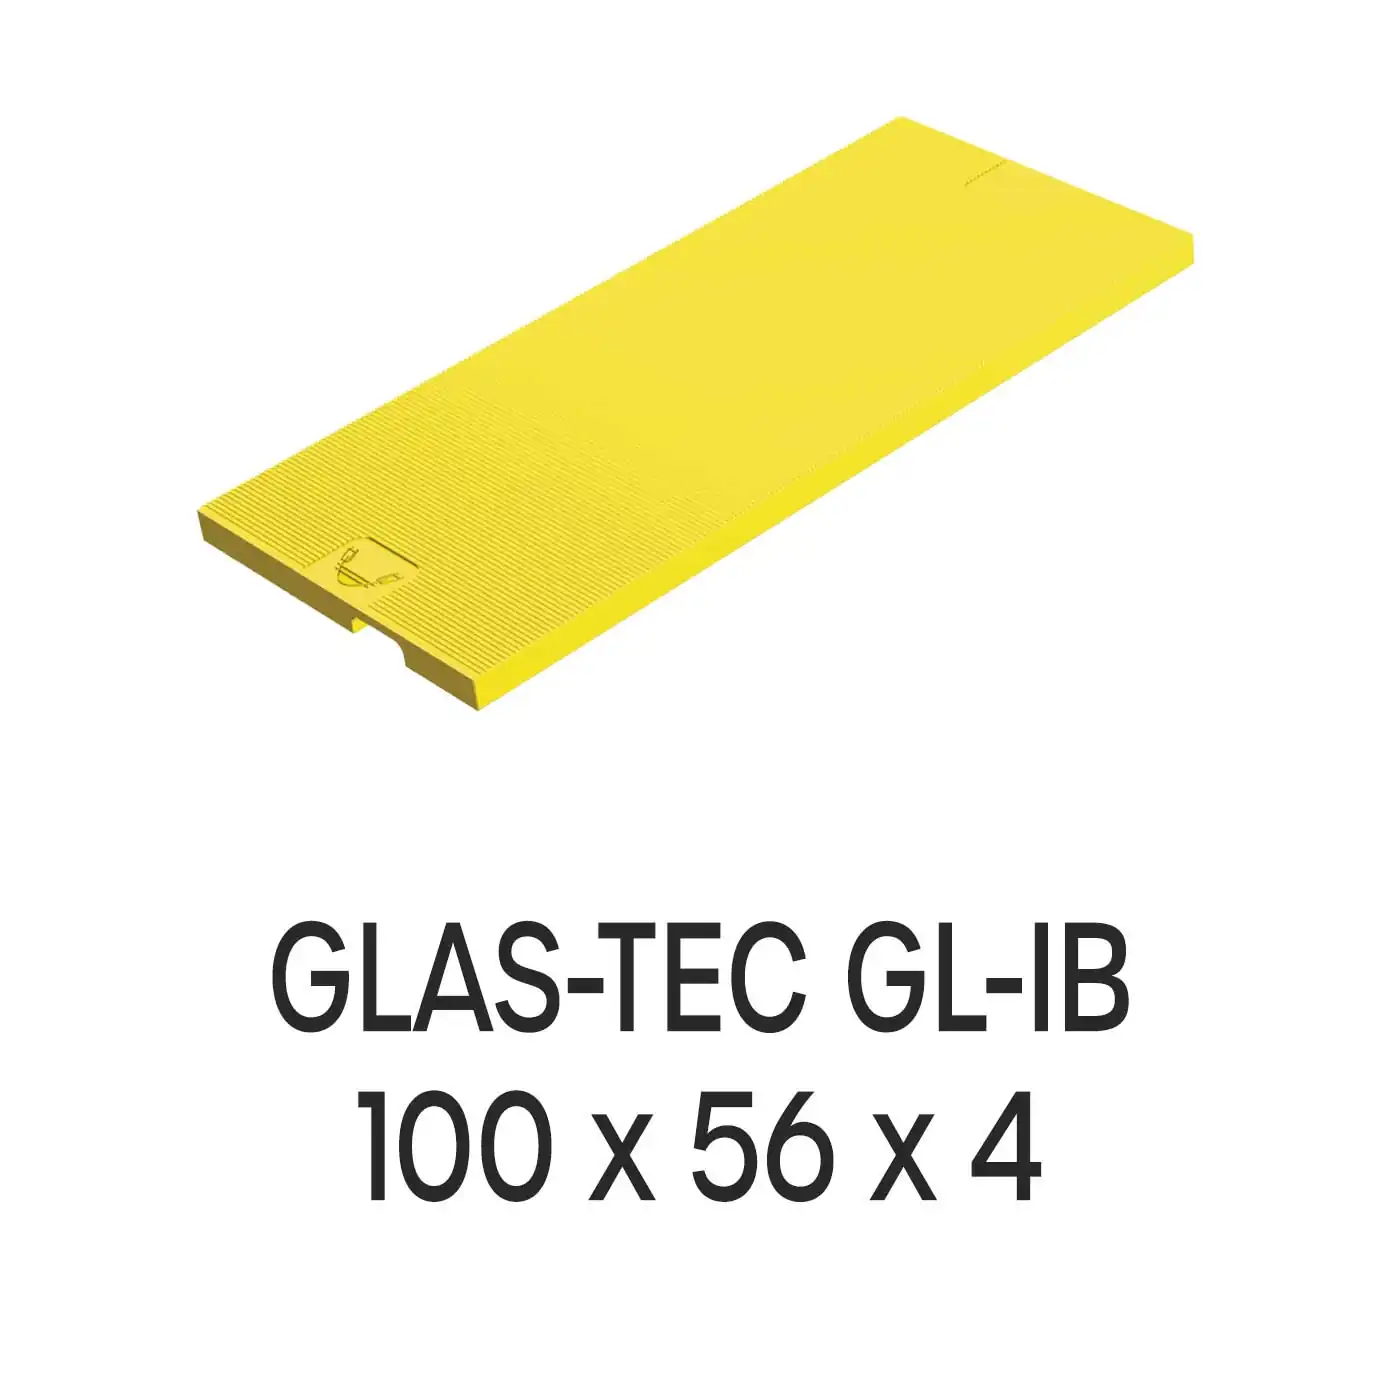 Roto Verglasungsklotz GLAS-TEC GL-IB, 100 x 56 x 4 mm, schwarz, 500 Stück